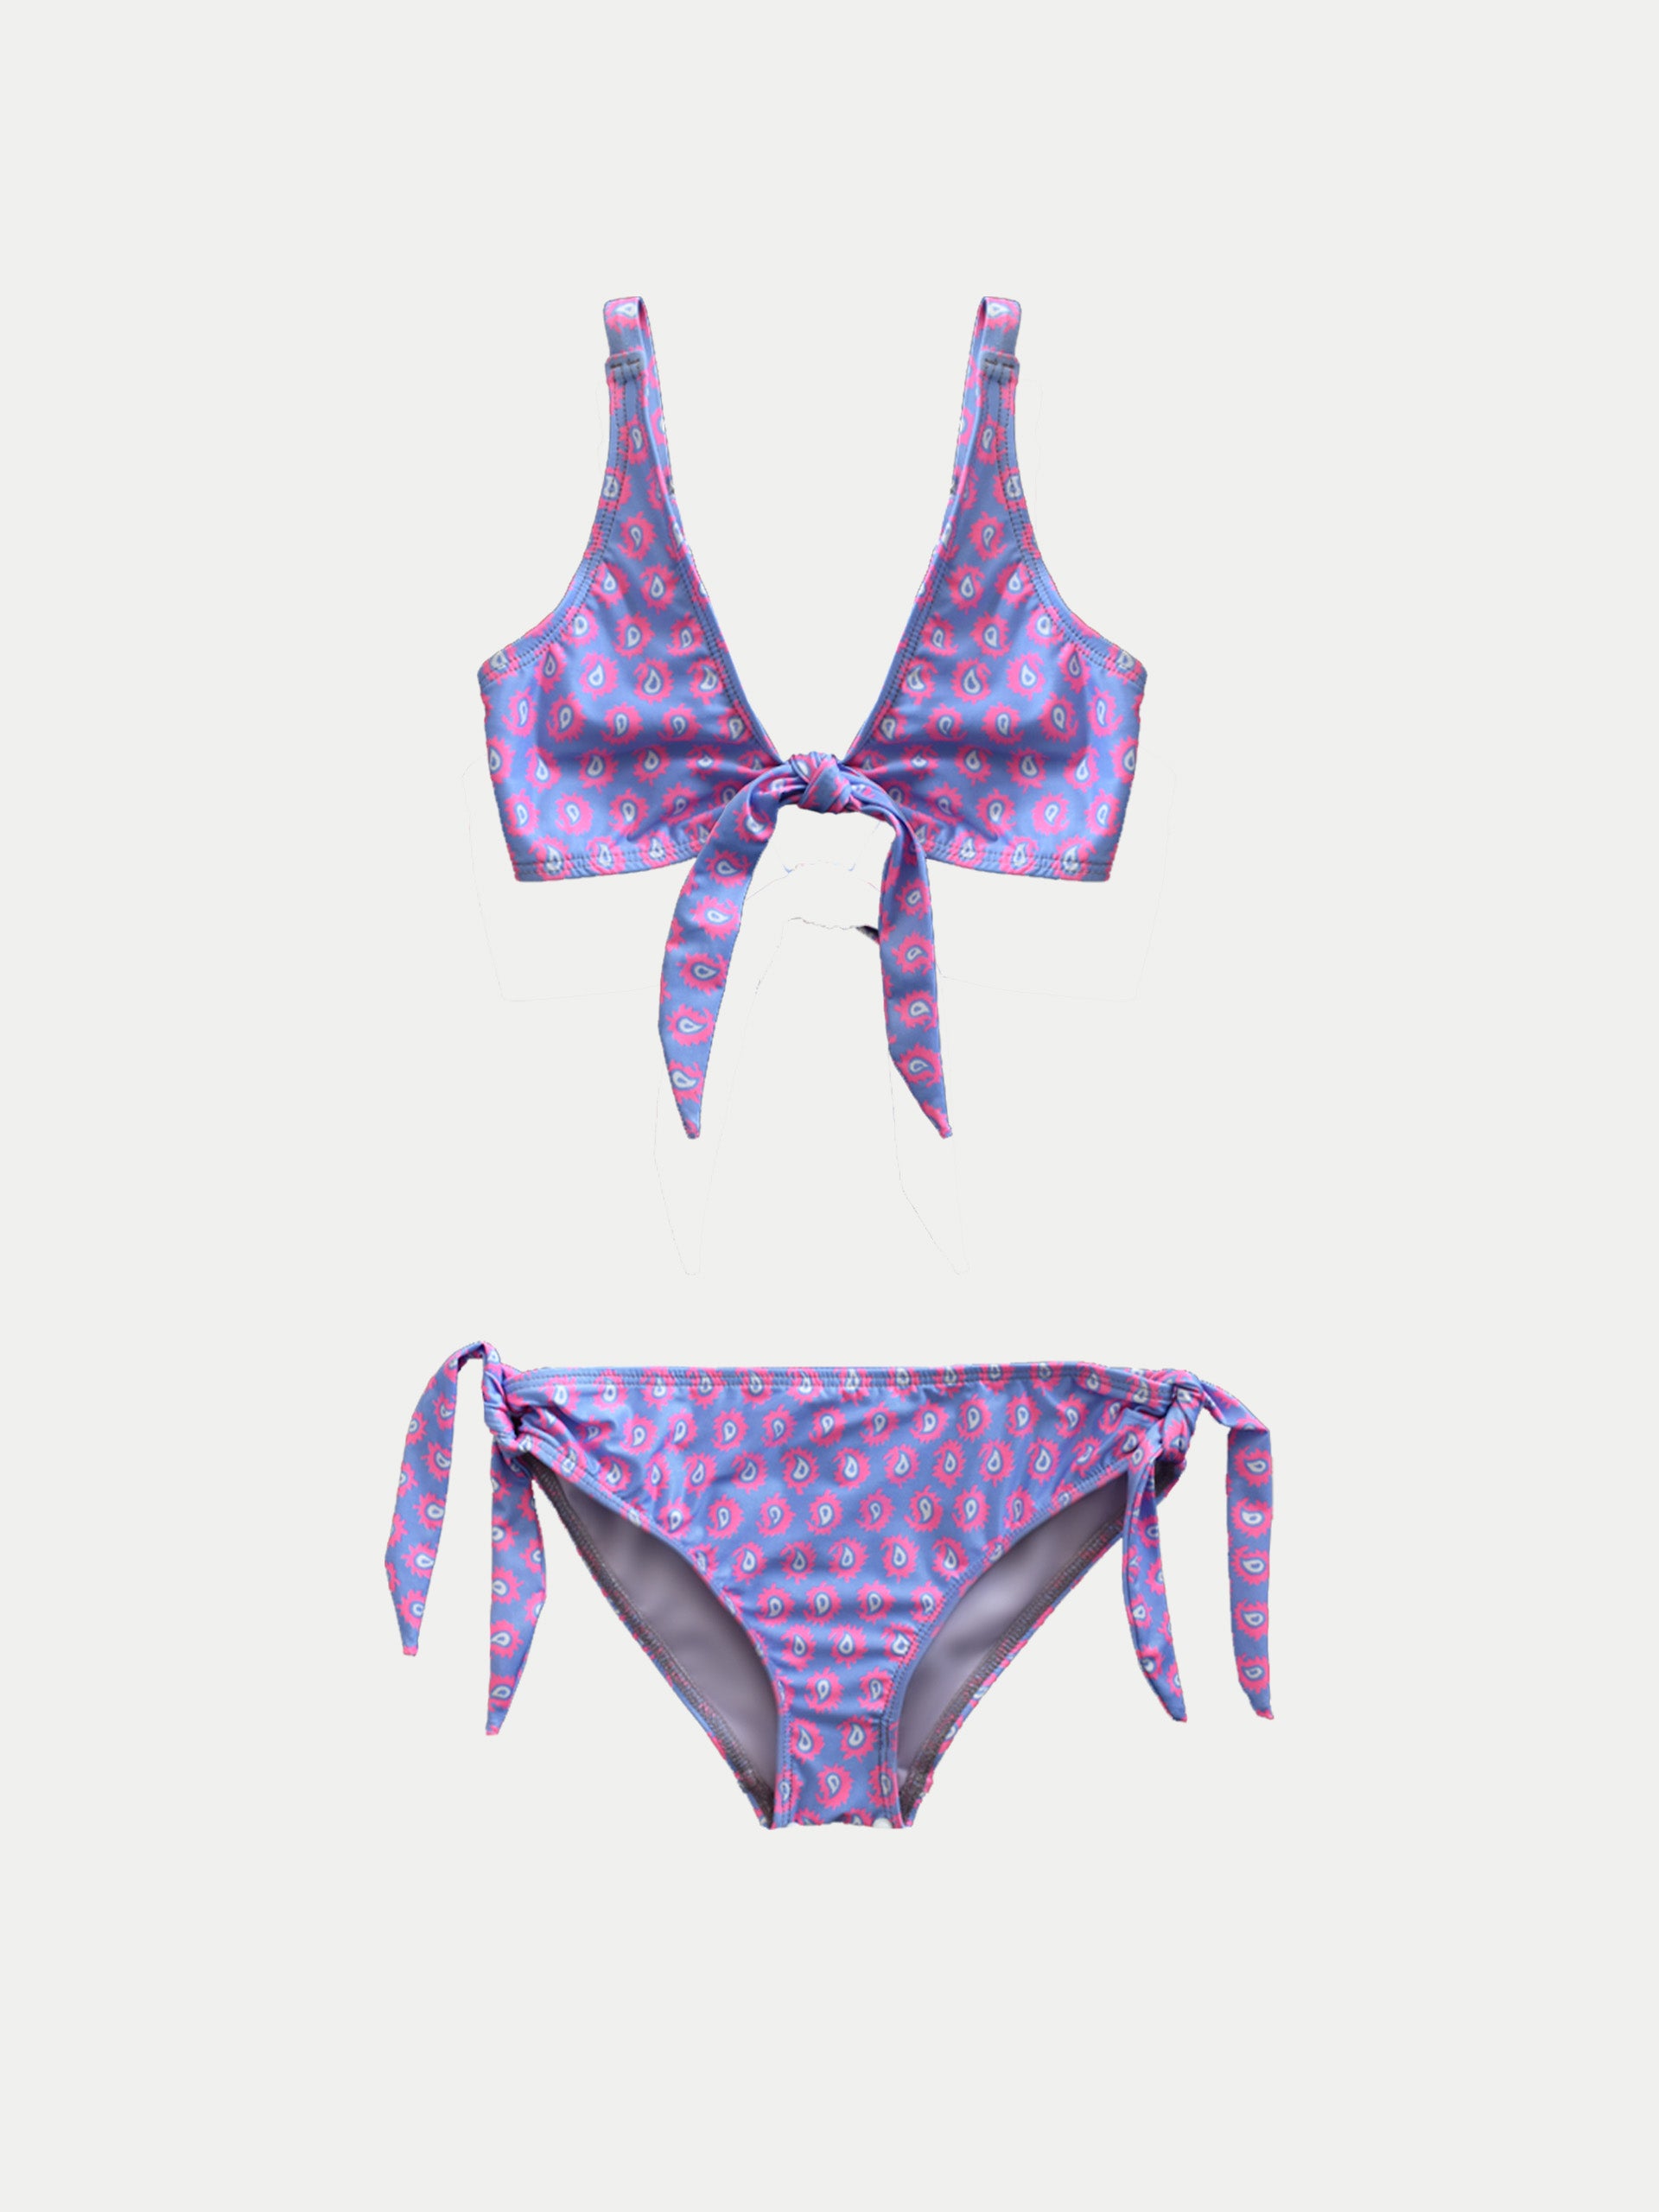 ‘Electric Pink’ Girls Swimwear by 98 Coast Av.